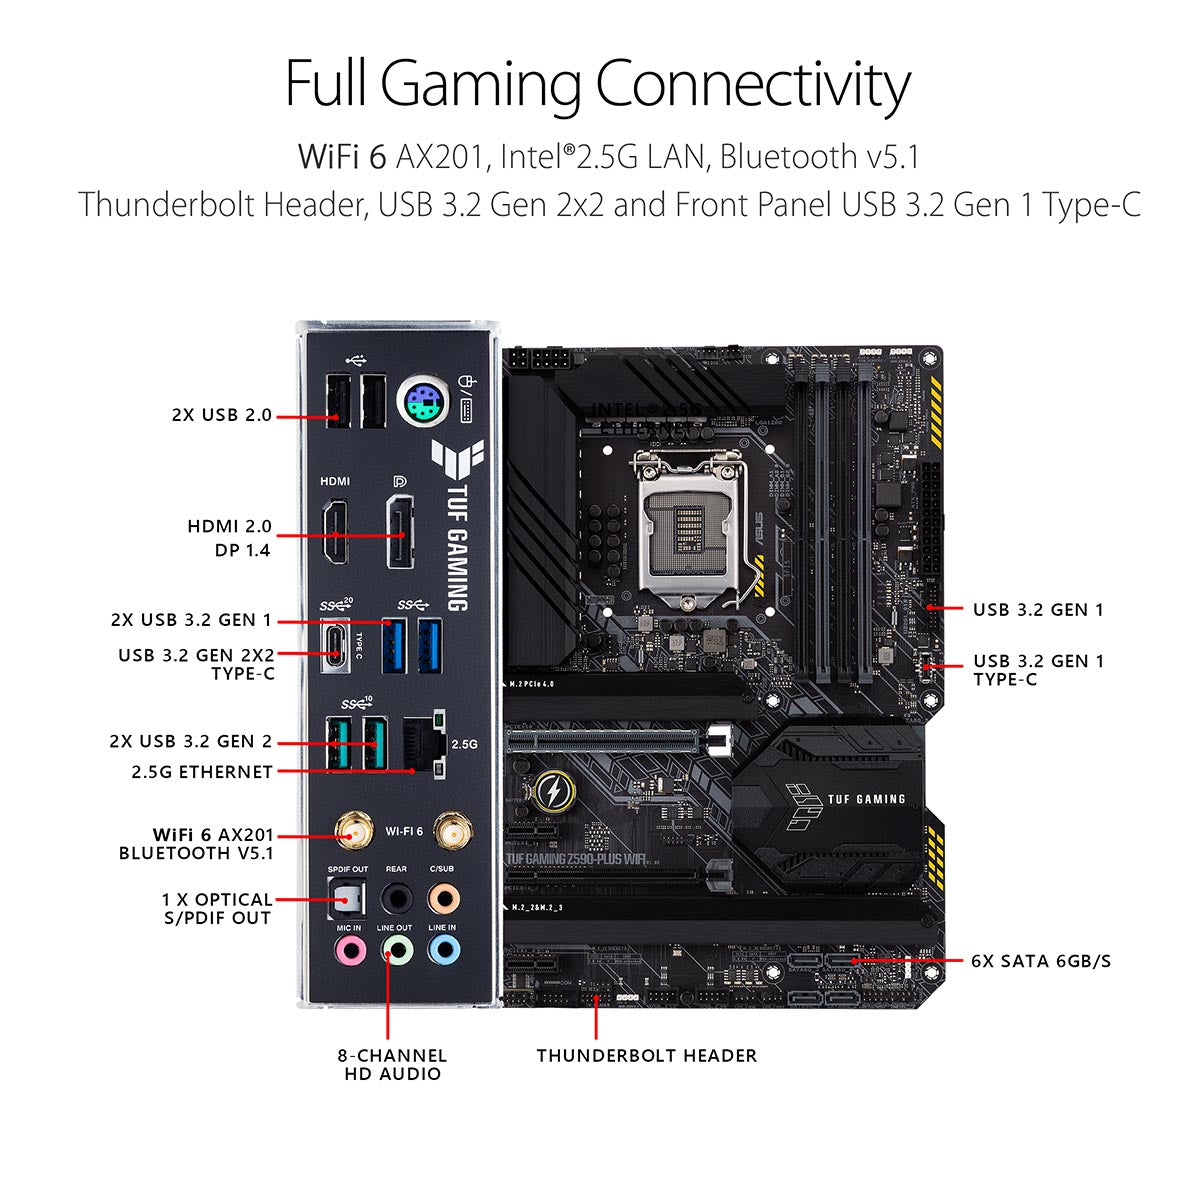 ASUS TUF गेमिंग Z590-Plus WiFi ATX LGA 1200 मदरबोर्ड WiFi 6 और AI नॉइज़ कैंसलेशन के साथ